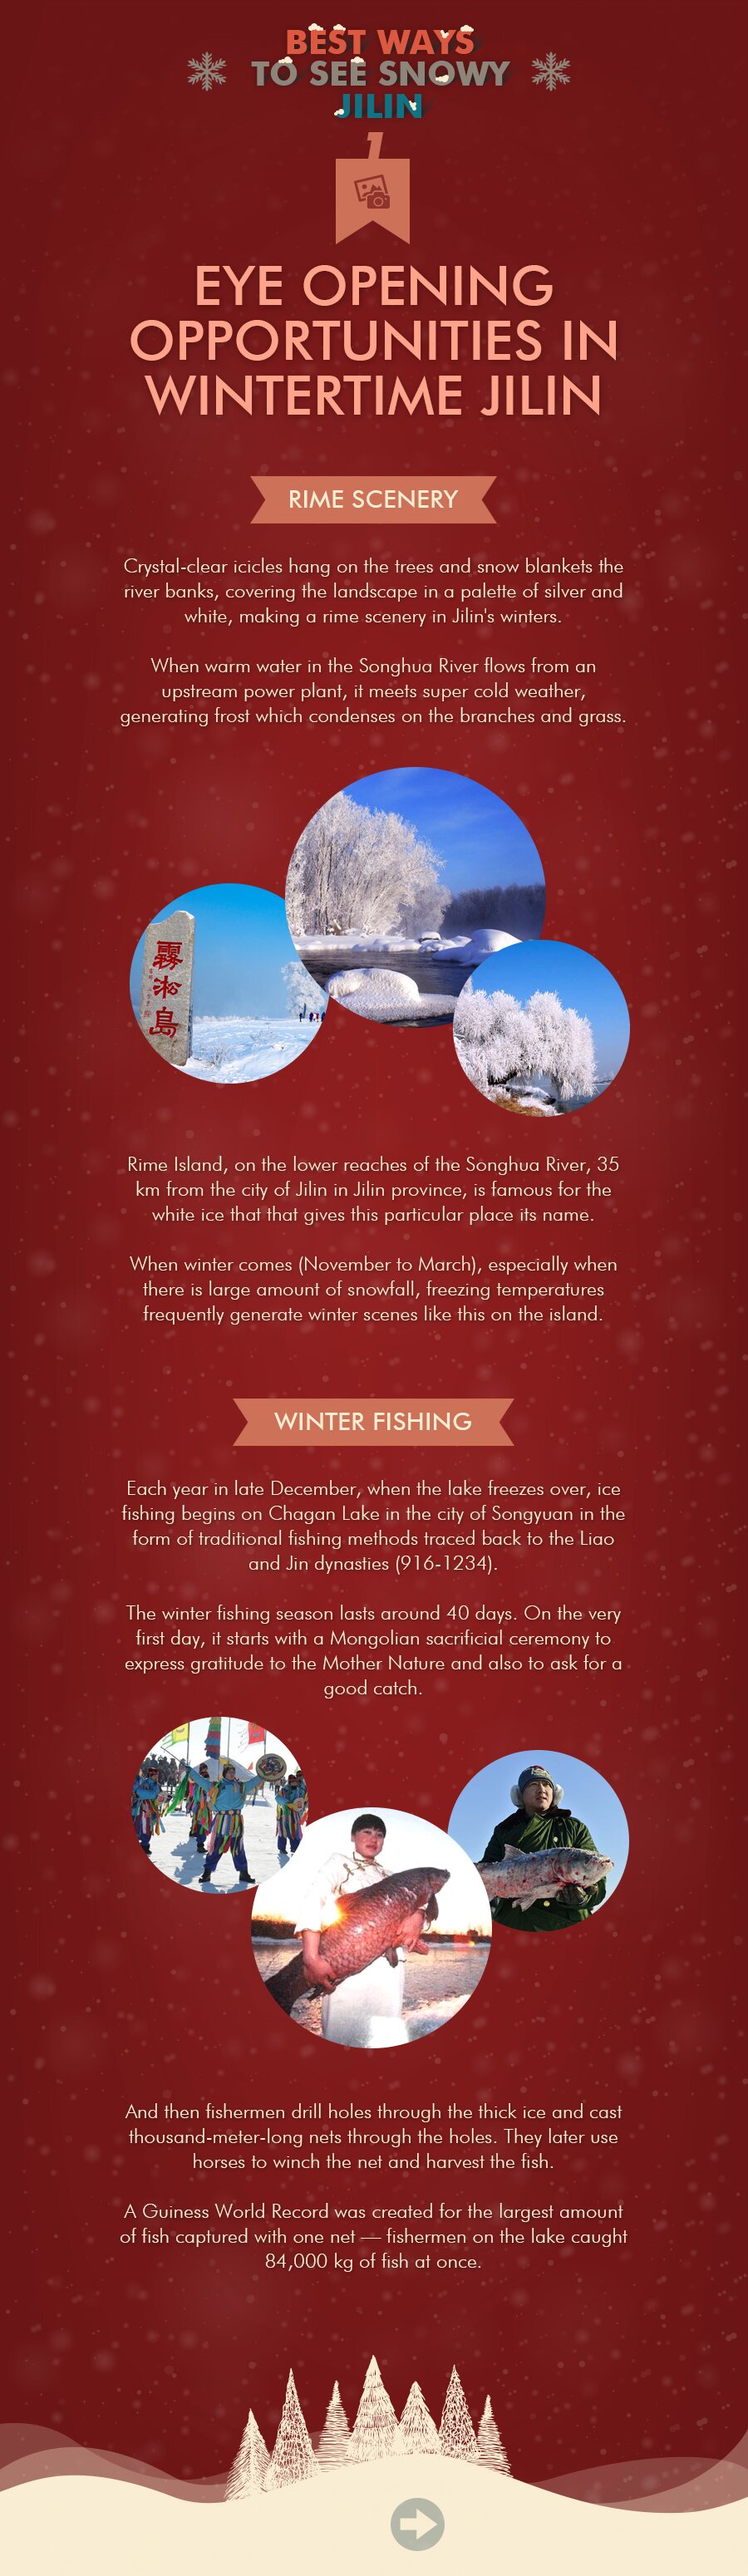 Eye opening opportunities in wintertime Jilin